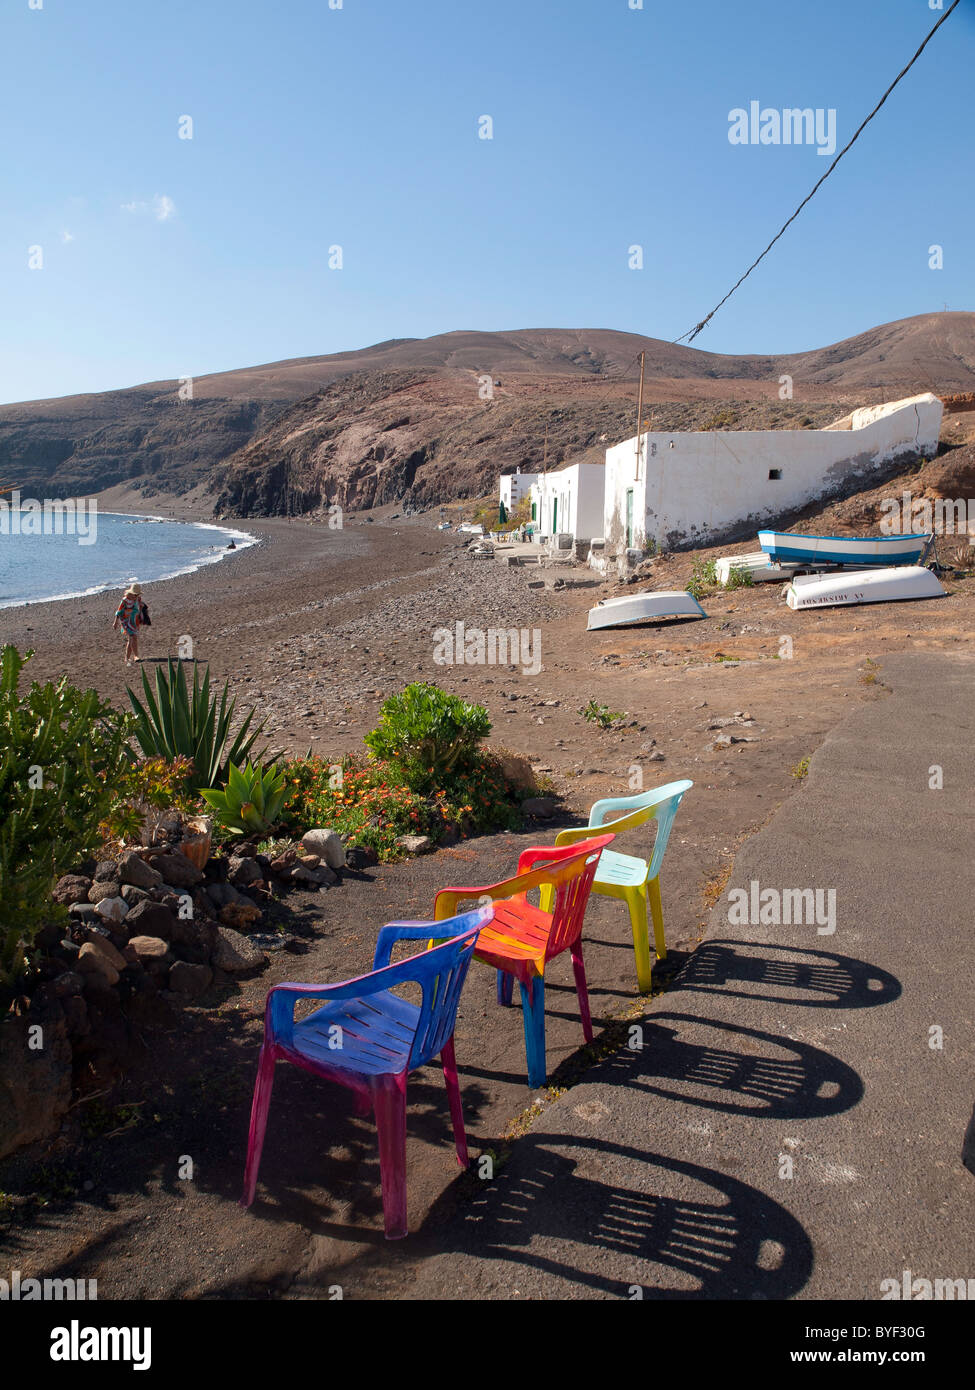 La plage dans le petit village de Playa Quemada Lanzarote avec trois chaises pour prendre le soleil Banque D'Images